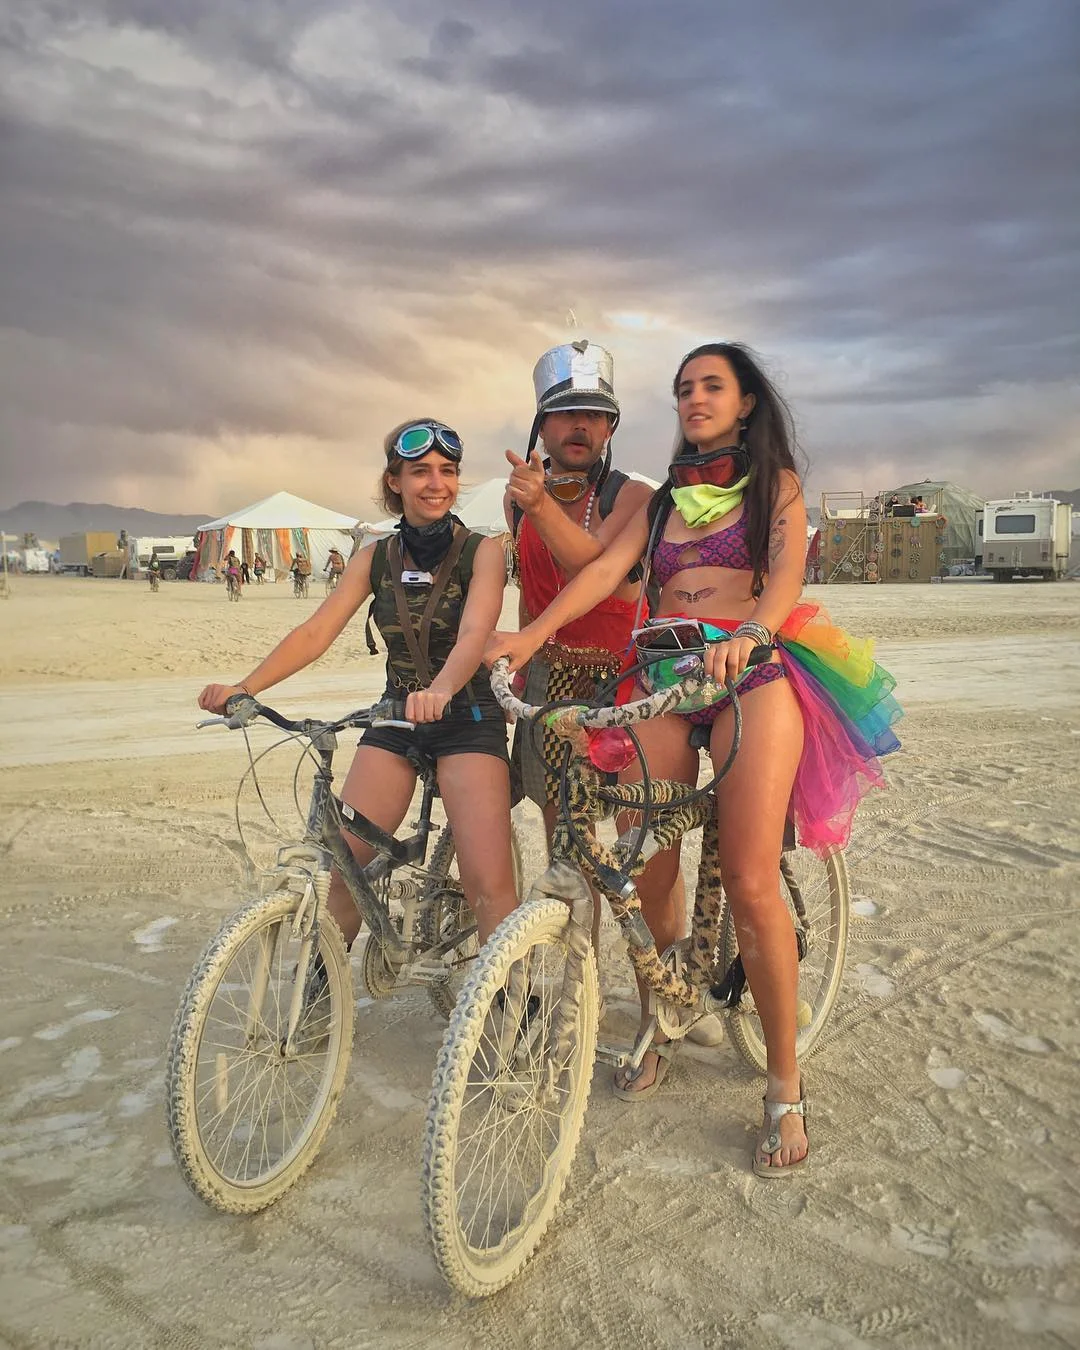 Пилюка, голі тіла та сучасне мистецтво: круті фото з фестивалю Burning Man 2017 - фото 336422